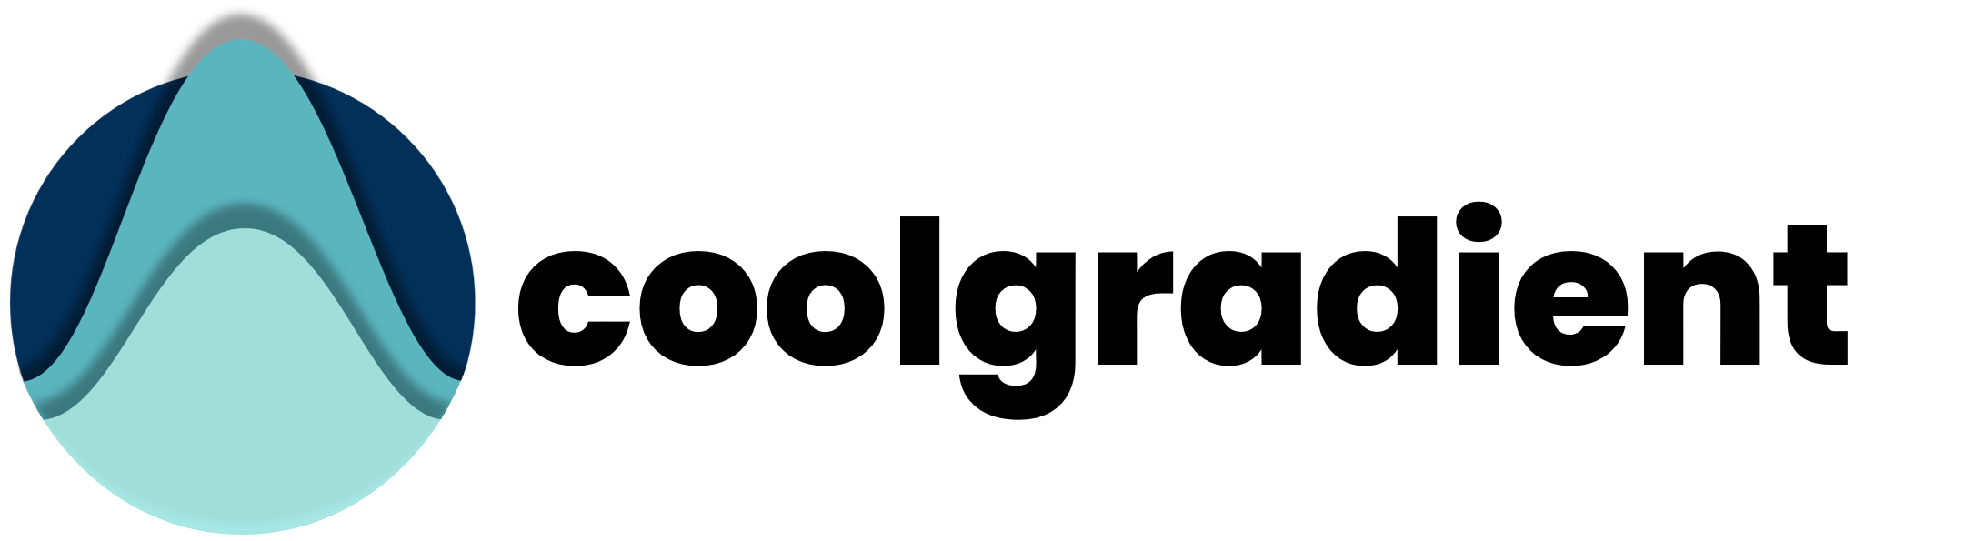 coolgradient logo